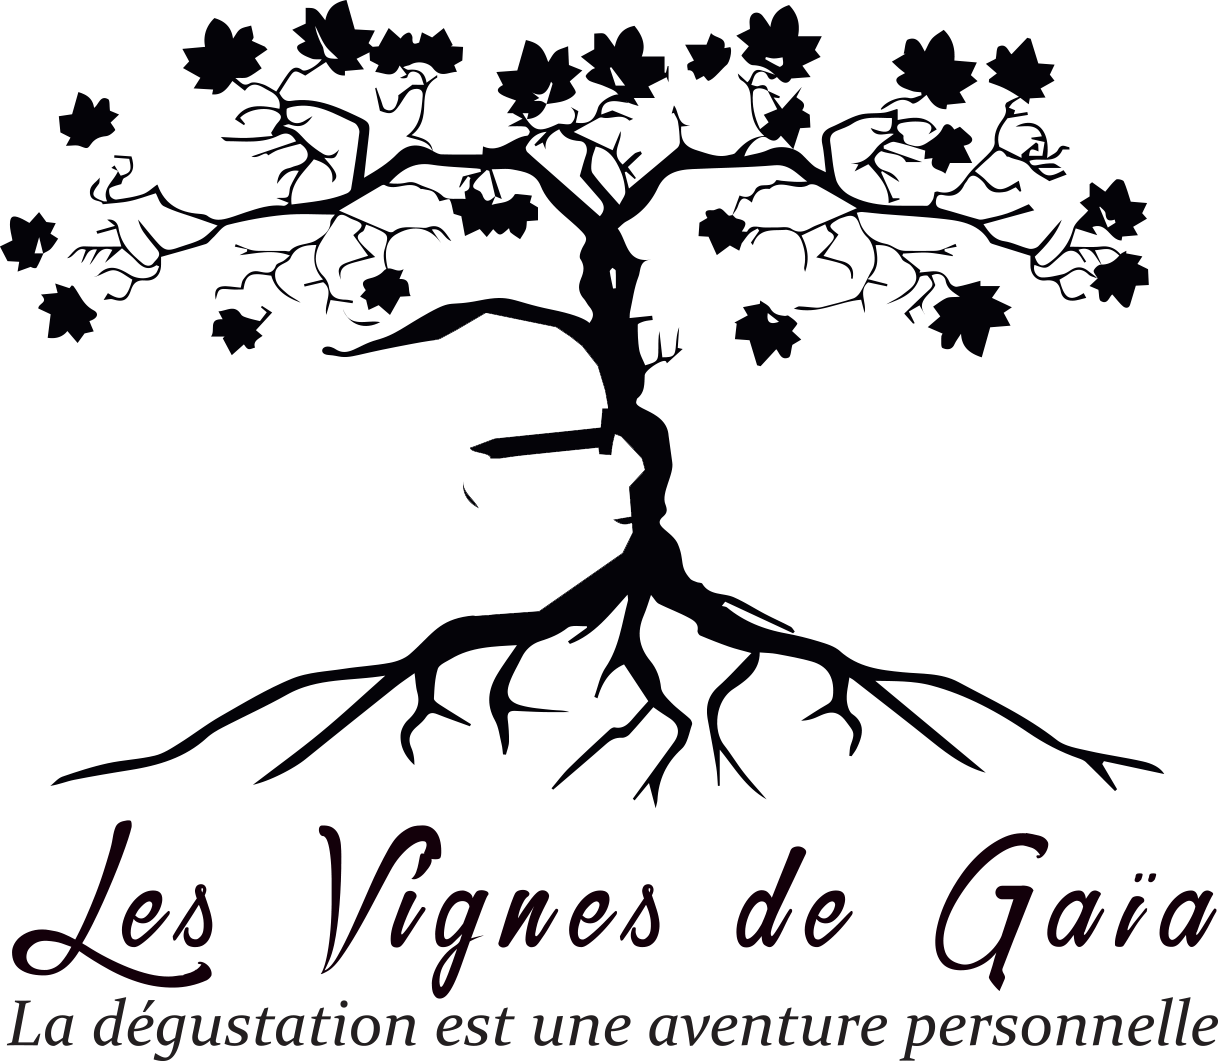 Philippe-Blatier-Oenoguide-Vin-nature